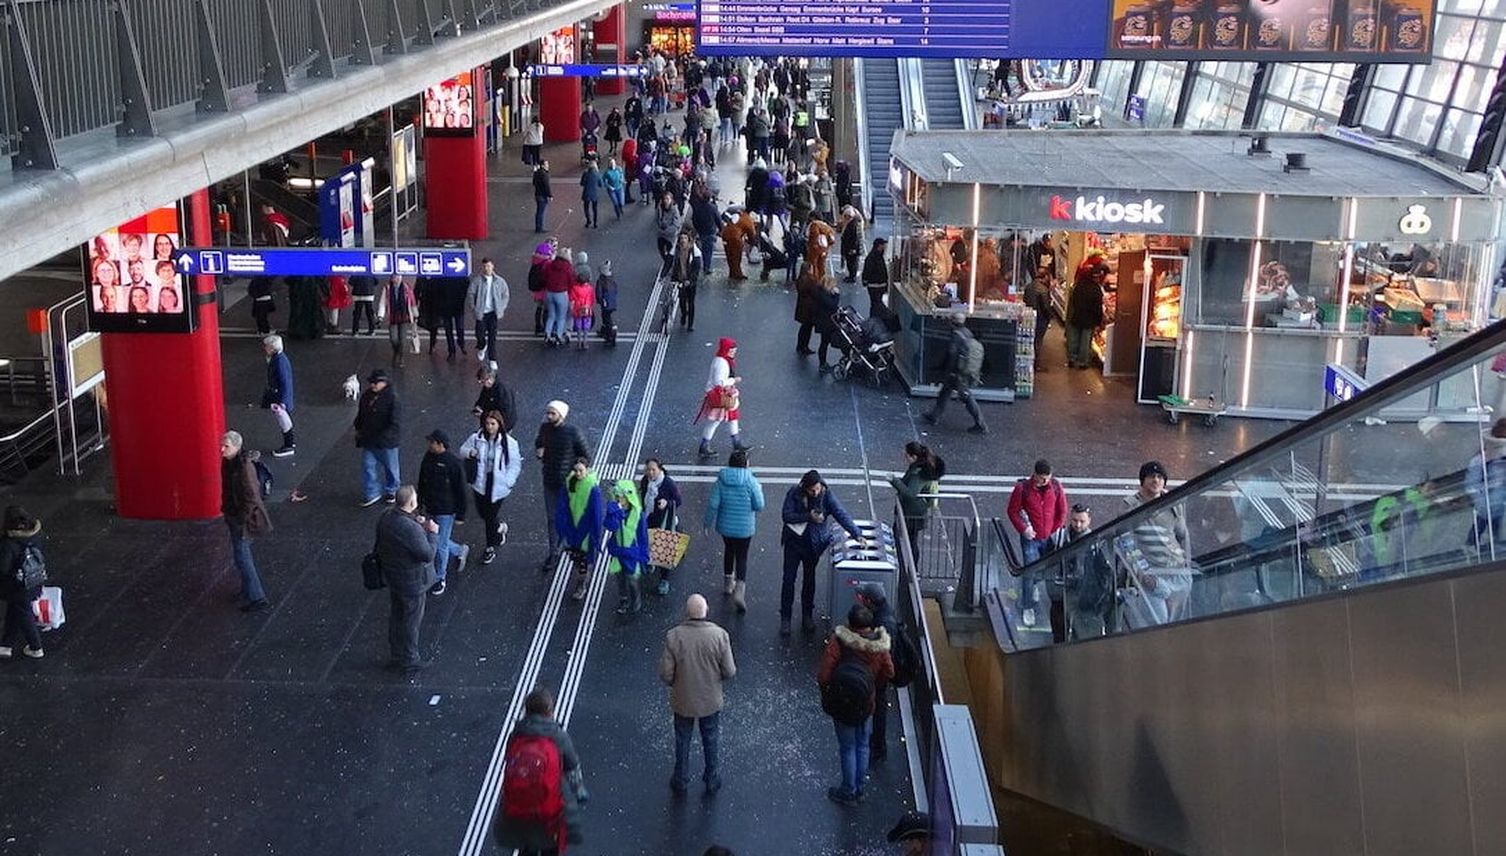 Junger Mann brach in Kiosk am Bahnhof Luzern ein